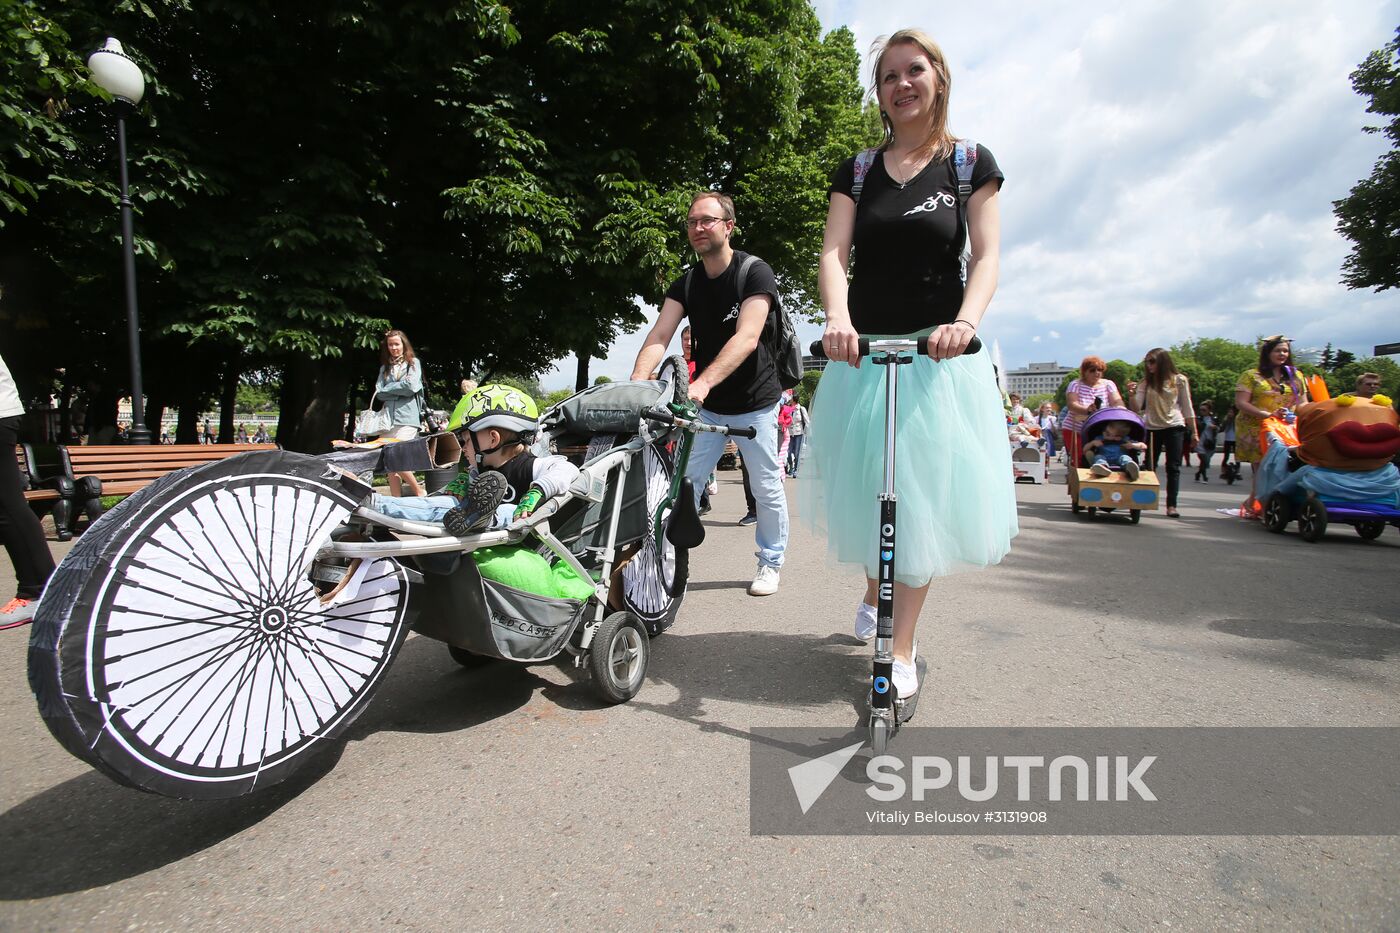 Pram parade in Gorky Park